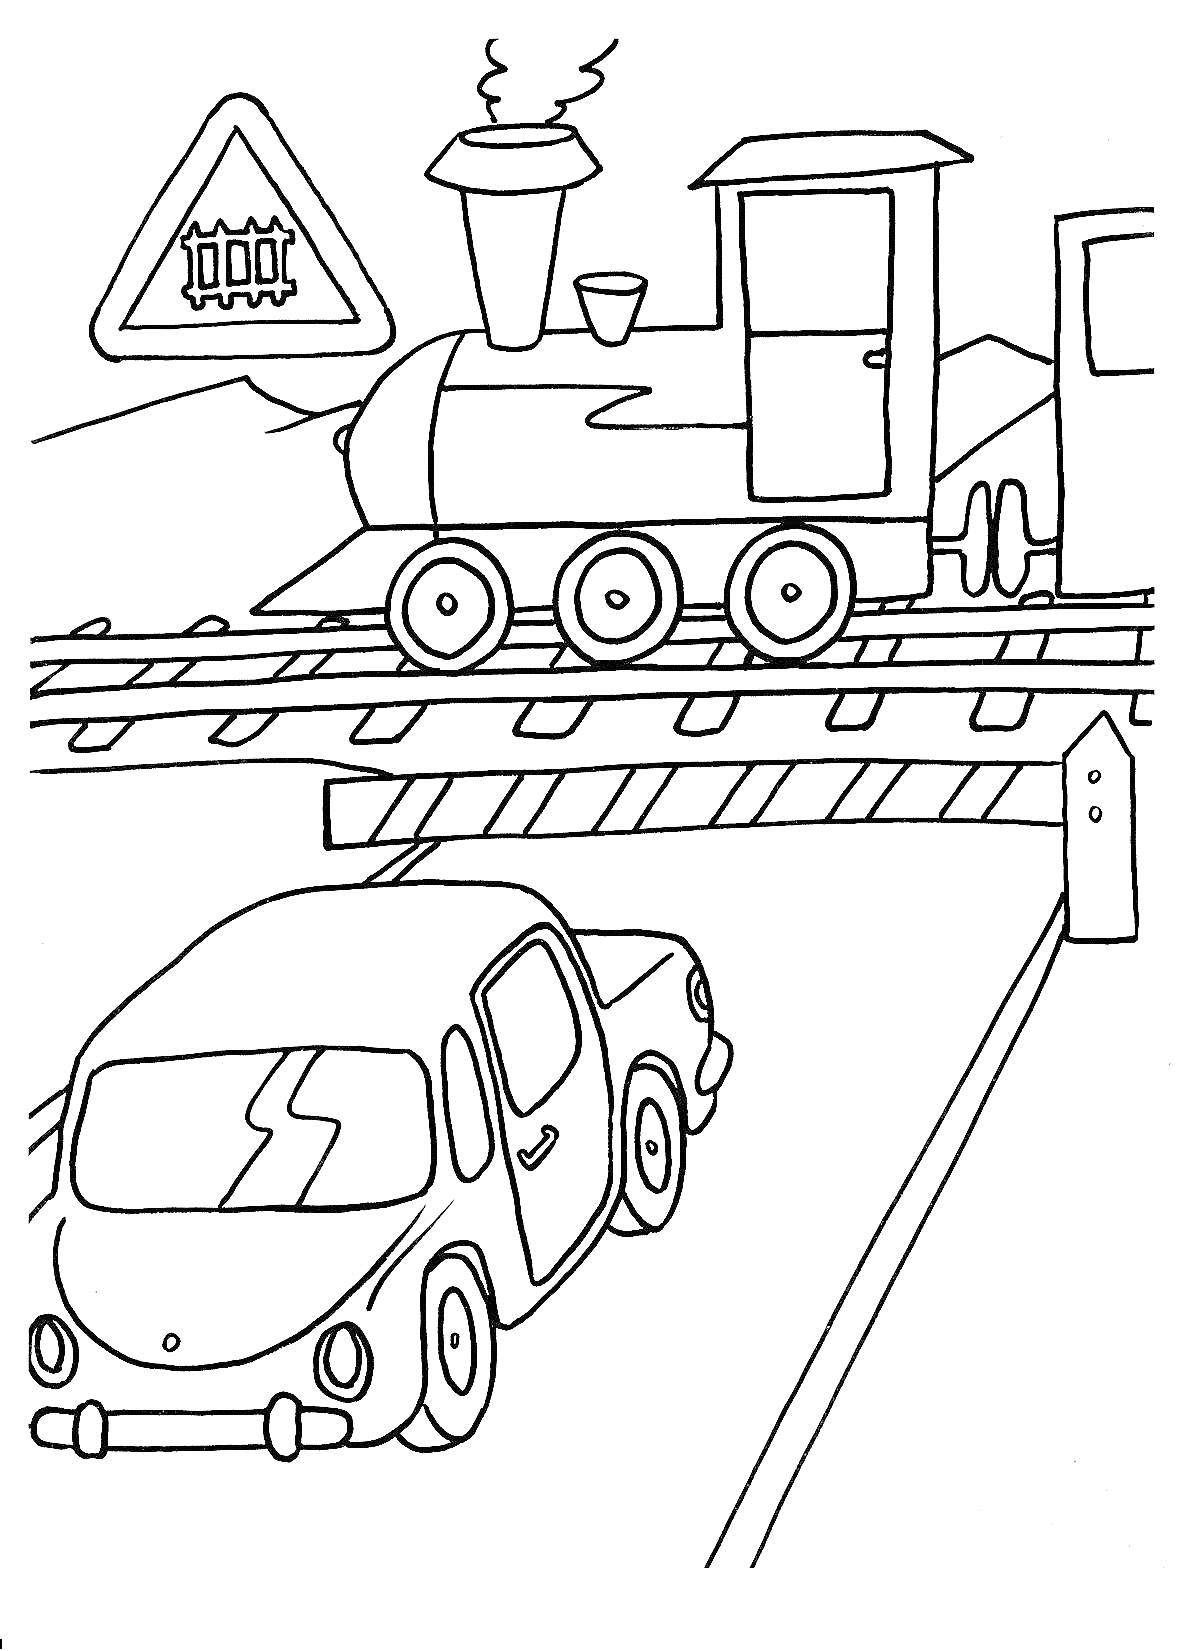 Раскраска Паровоз, автомобиль и железнодорожный переезд со шлагбаумом и знаком железнодорожного переезда без шлагбаума